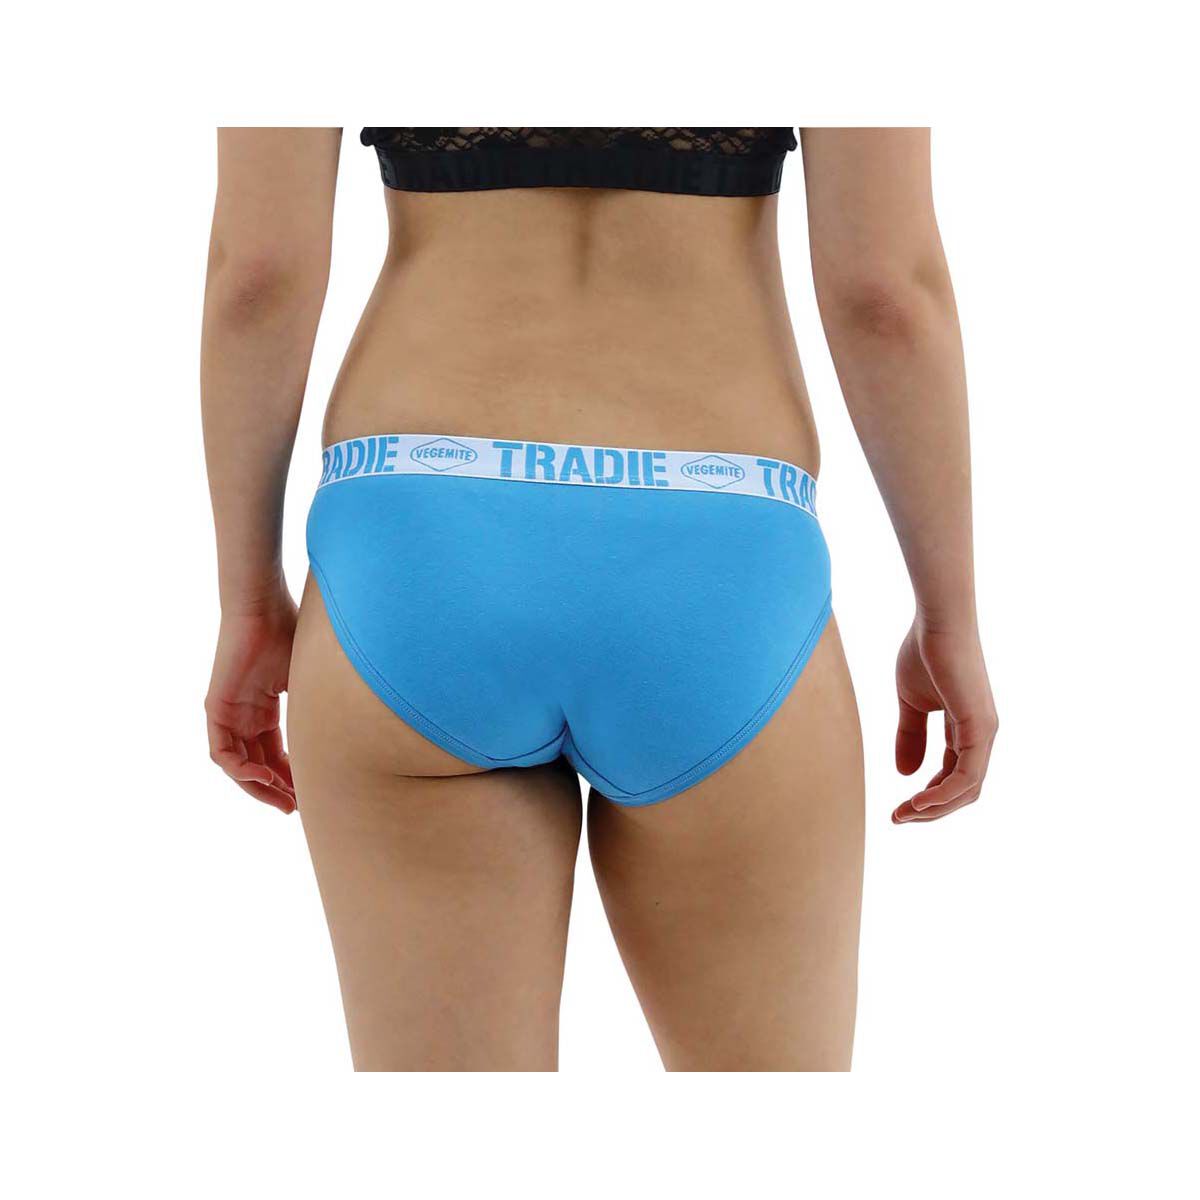 Vegemite Underwear by Tradie from $12 - Best & Less